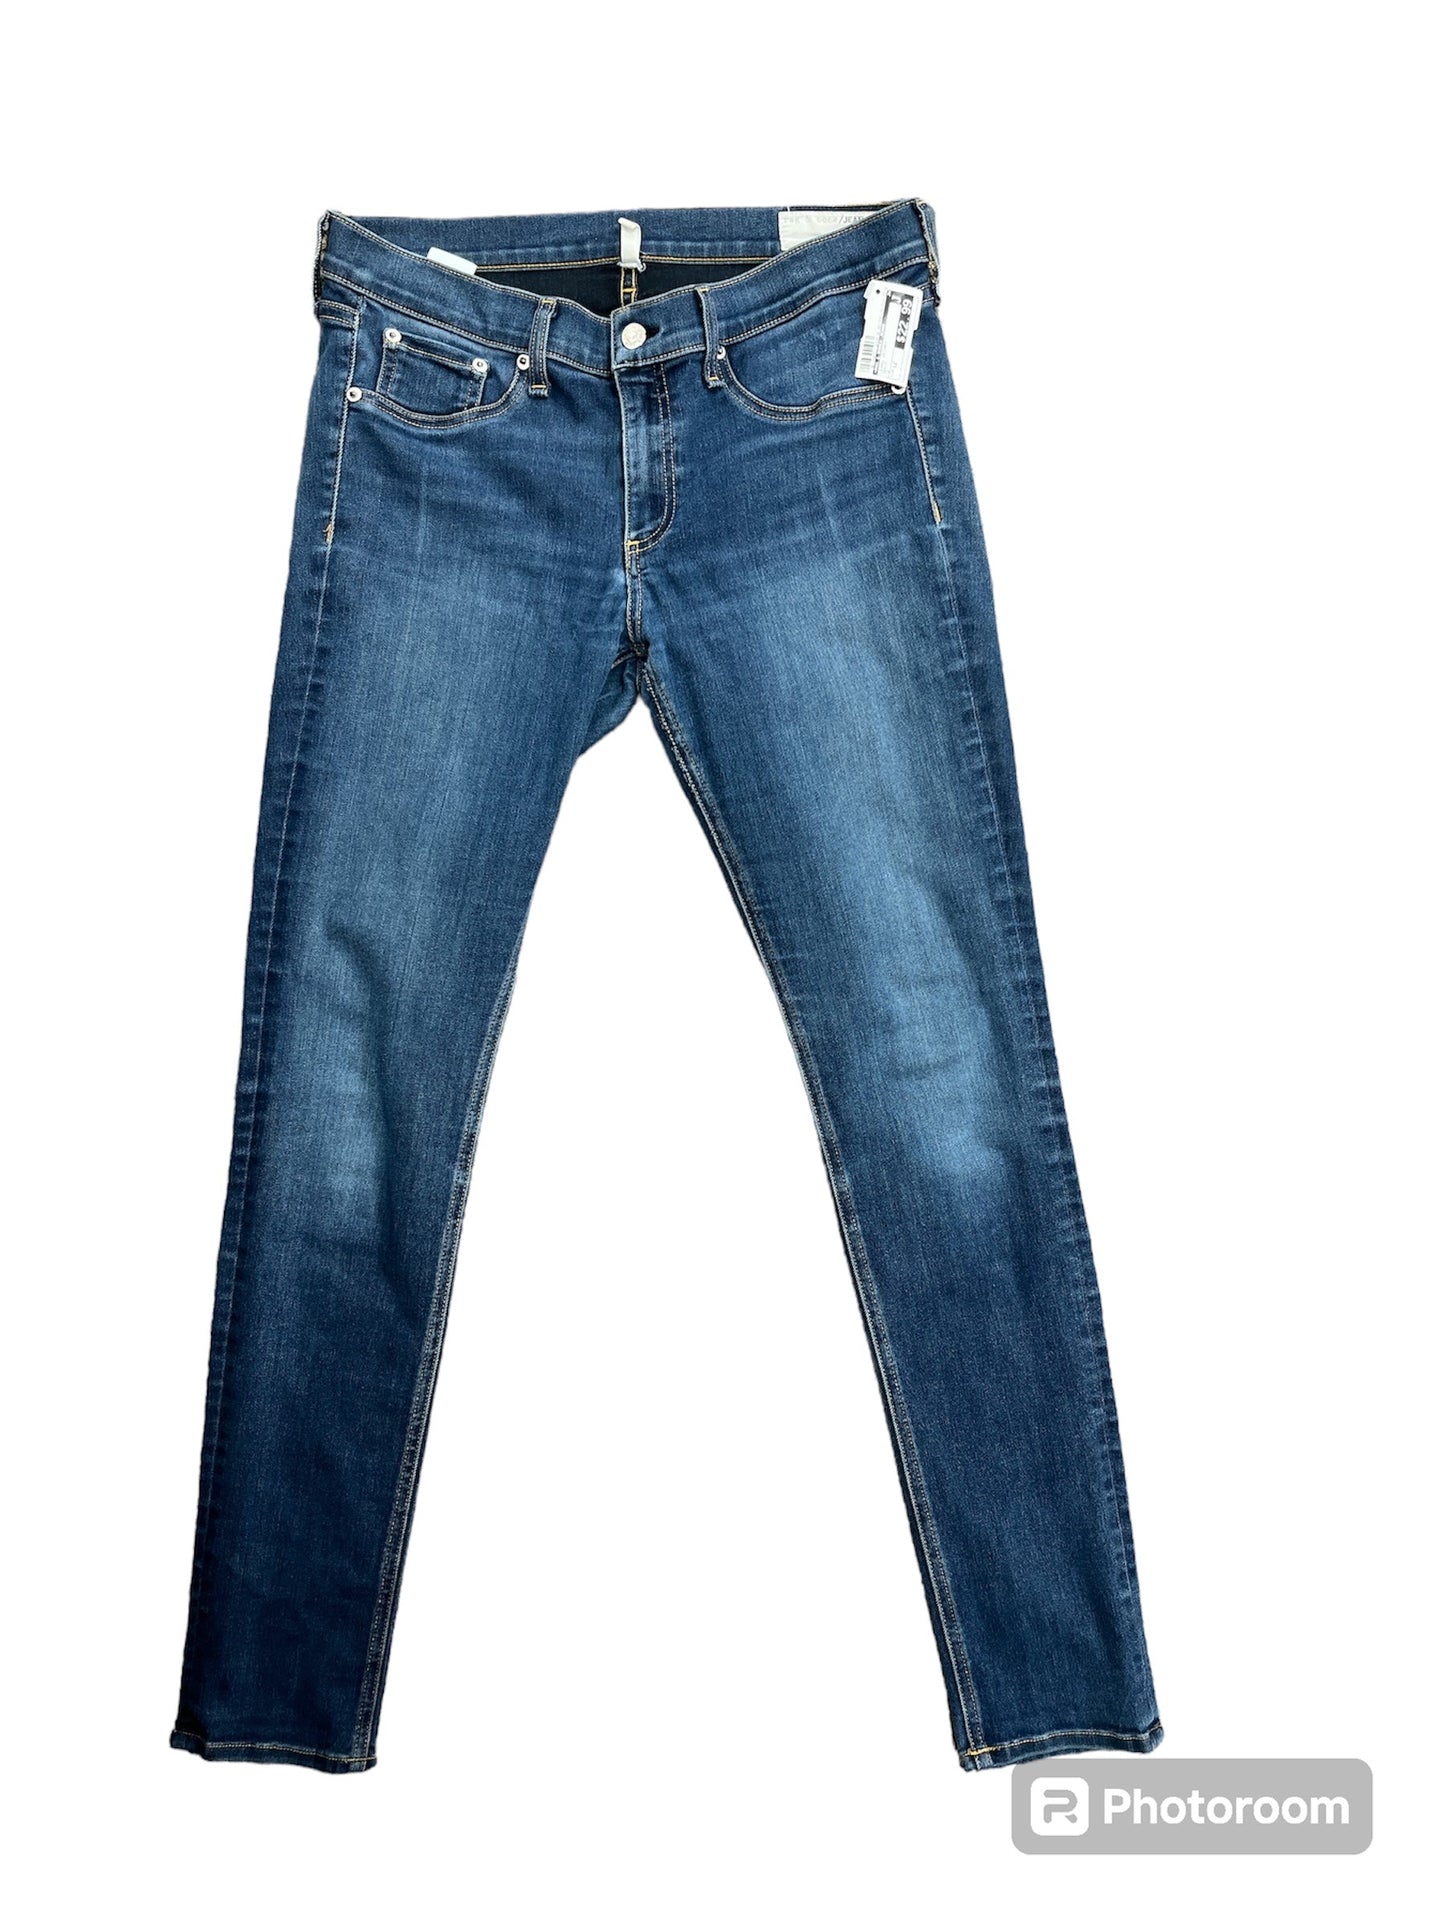 Denim Jeans Skinny Rag & Bones Jeans, Size 12